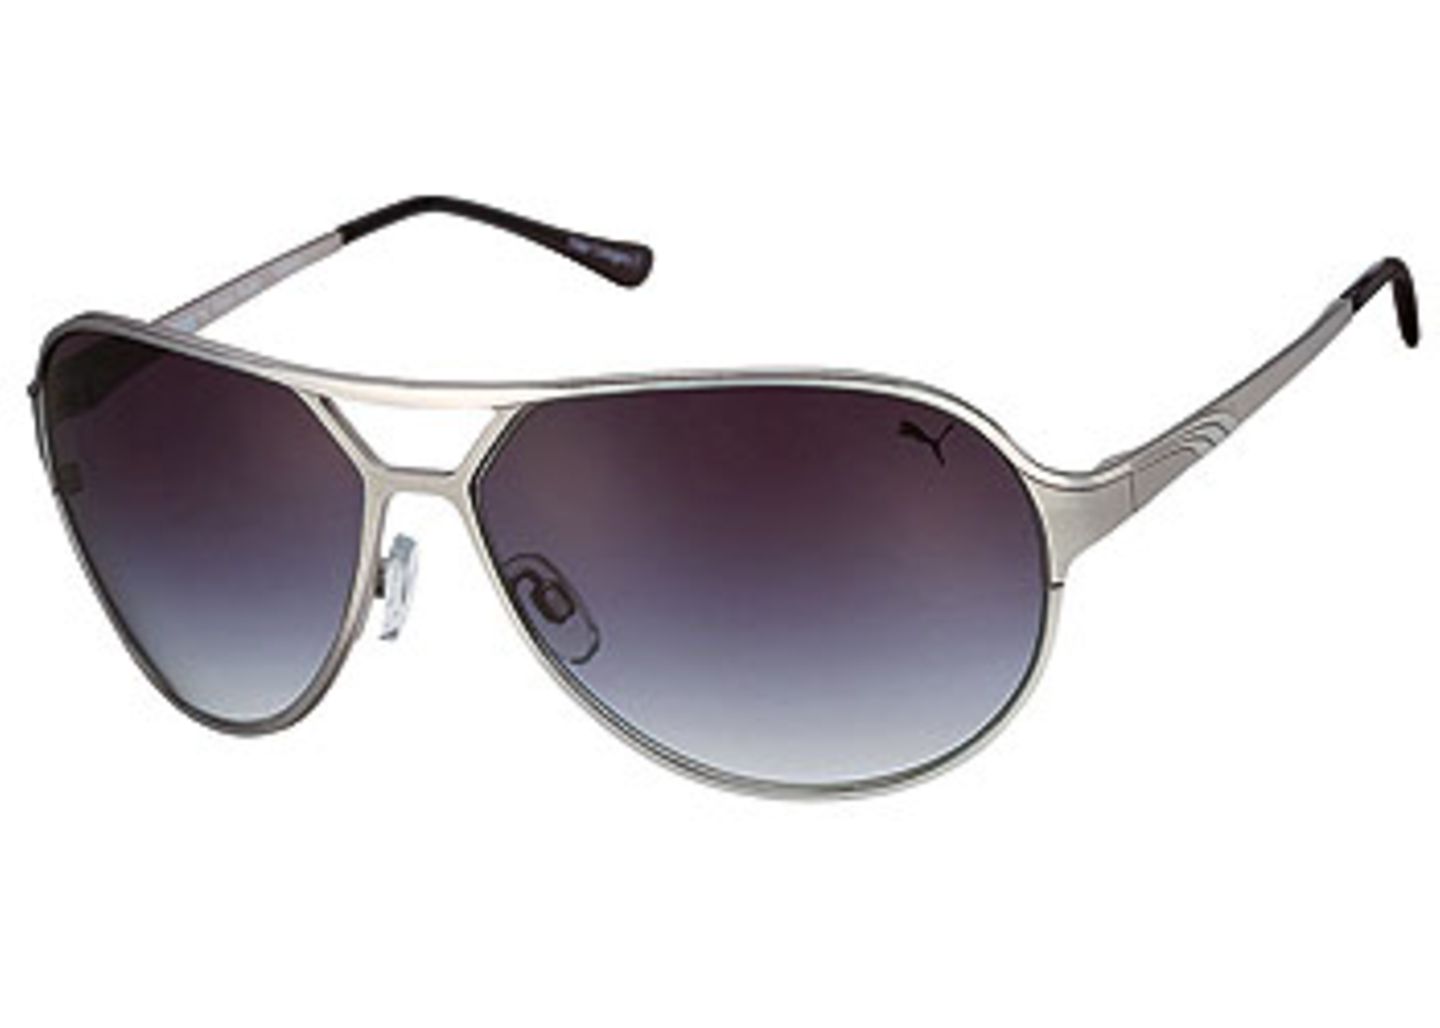 Pilotenbrille mit silberner Metallfassung und blau-grauen Gläsern; 149,00 Euro; von Puma